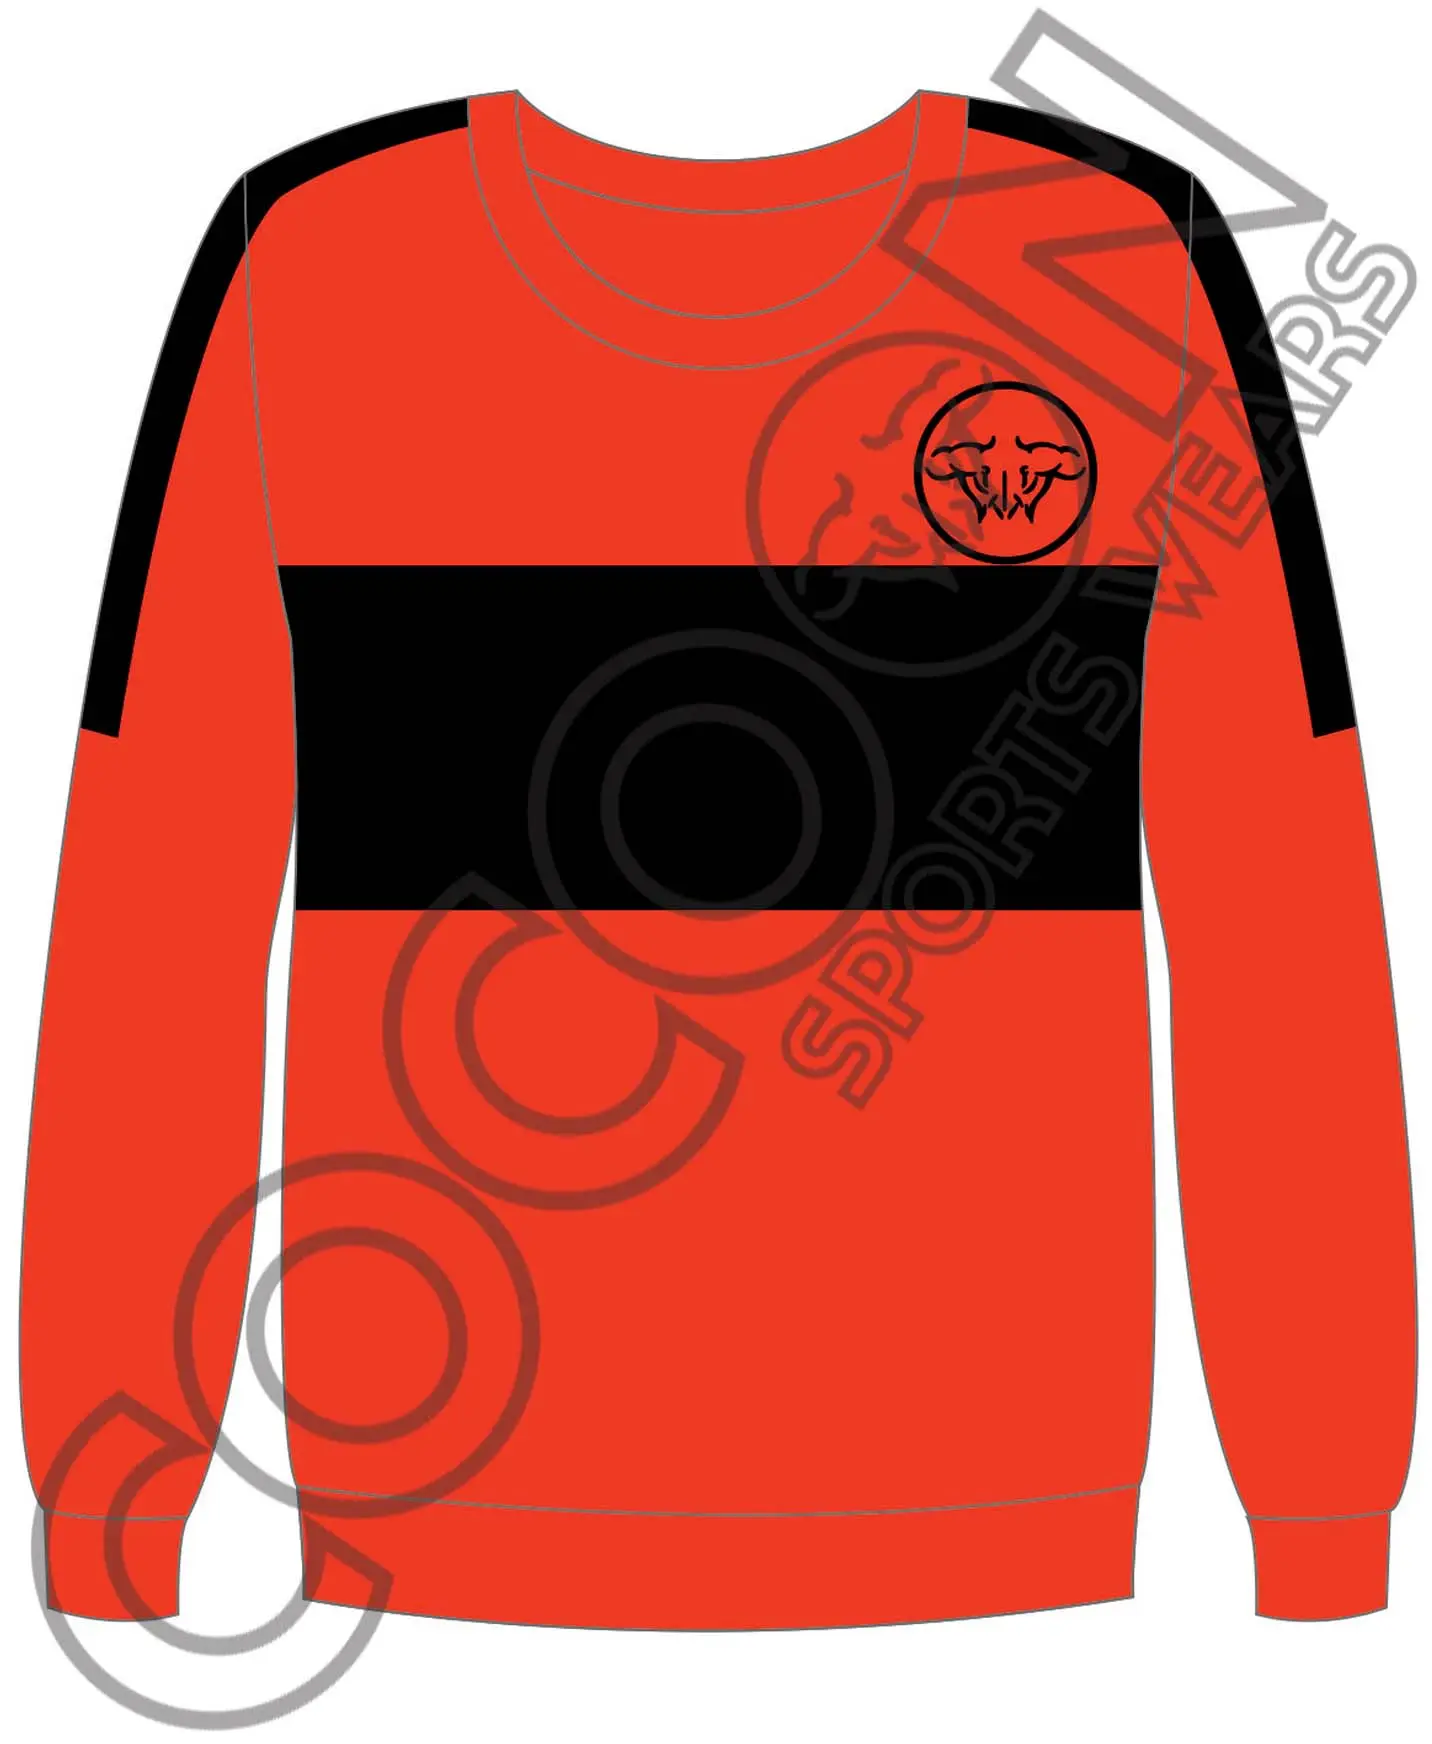 Sublimierte Fitness tragen Winter anzug Orange mit schwarzen Modest reifen OEM Logo Winter Special Sweat Shirts